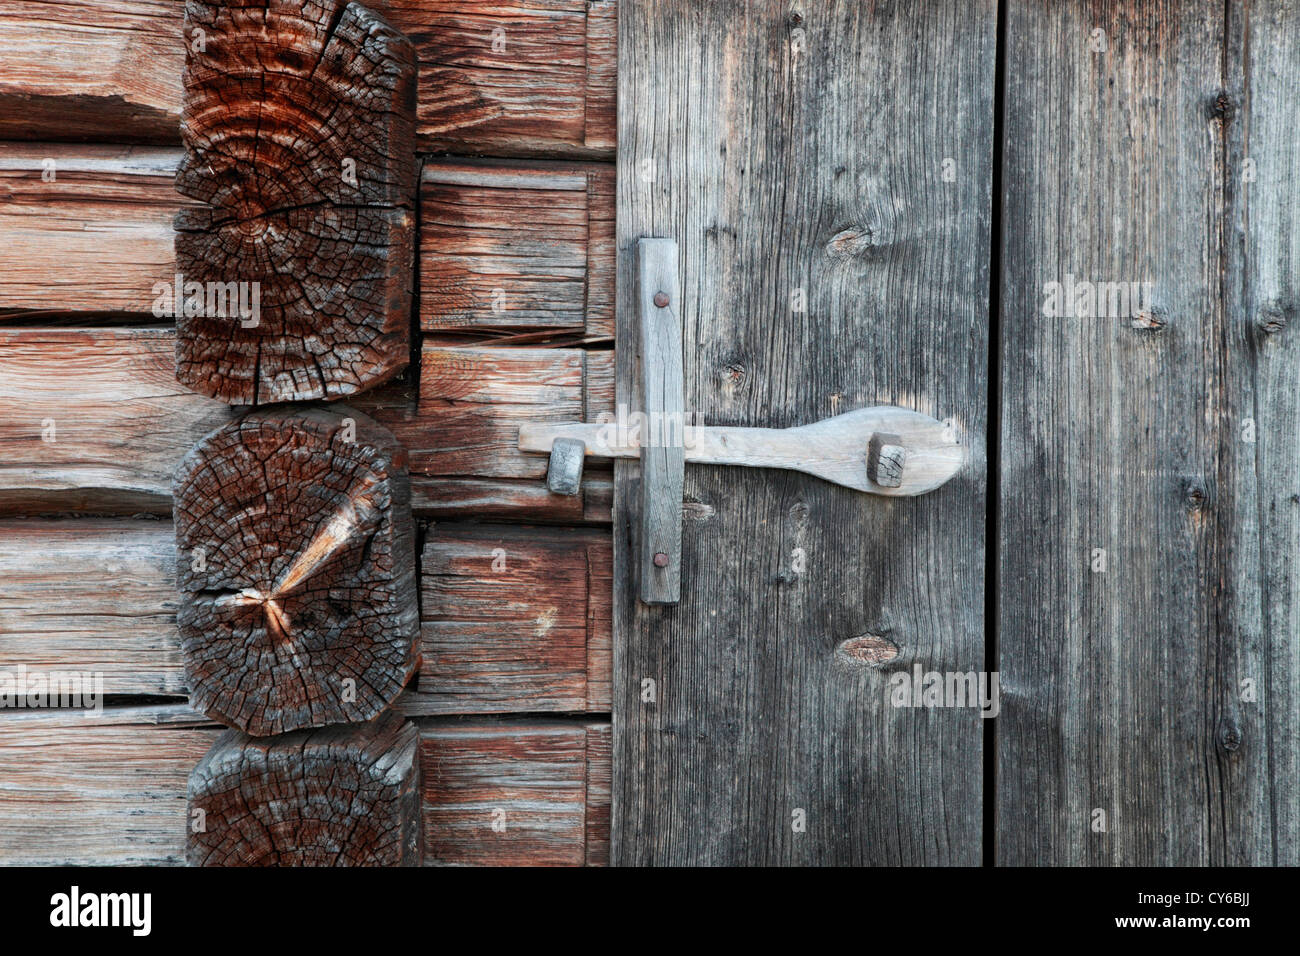 Dettaglio di una tradizionale casa log in Svezia: vite di legno su una porta del granaio. Foto Stock